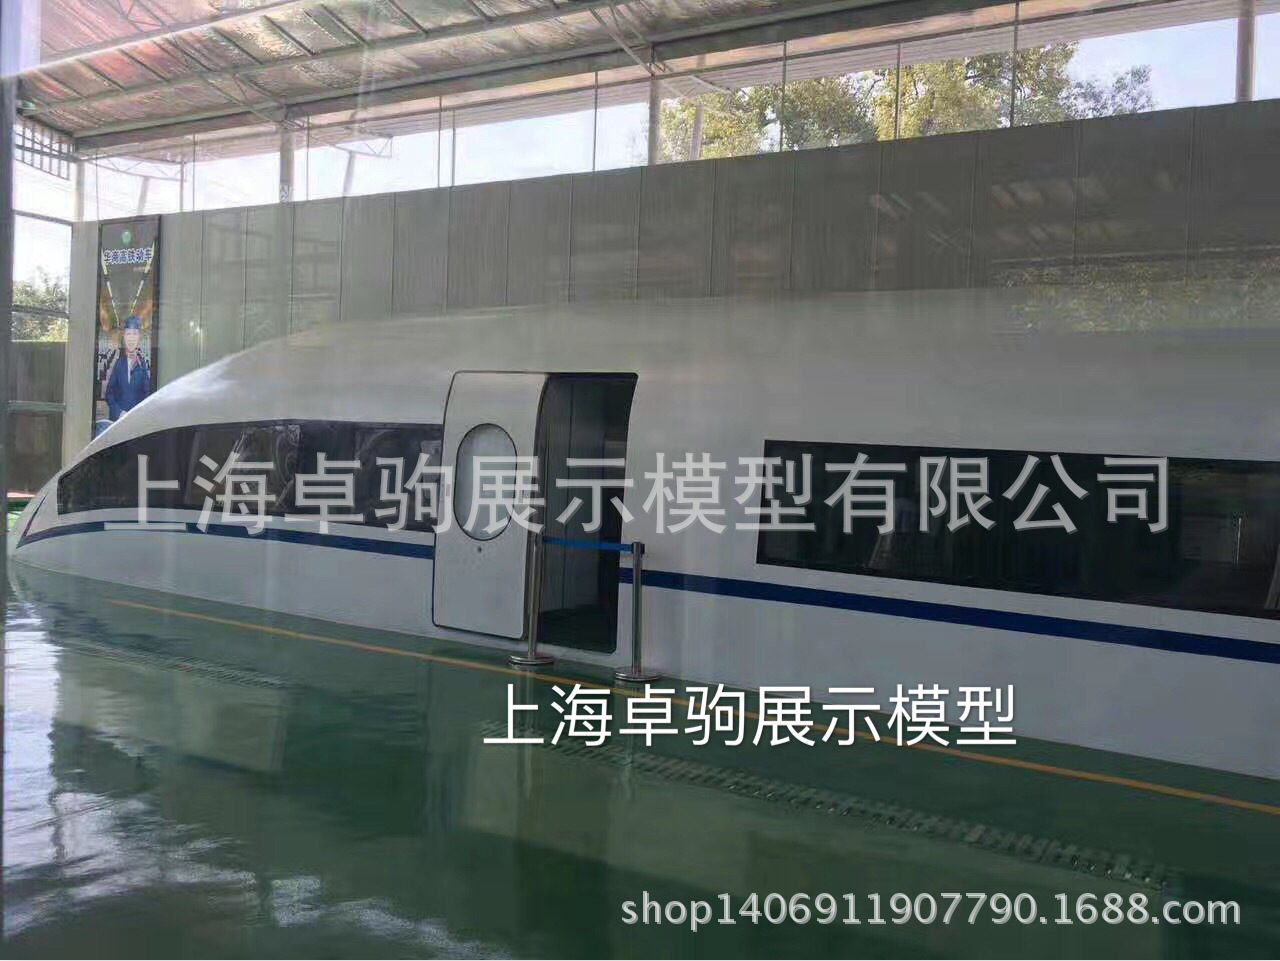 大型模拟舱动车高铁教学实训设备上海卓驹展示模型专业加工定制示例图5